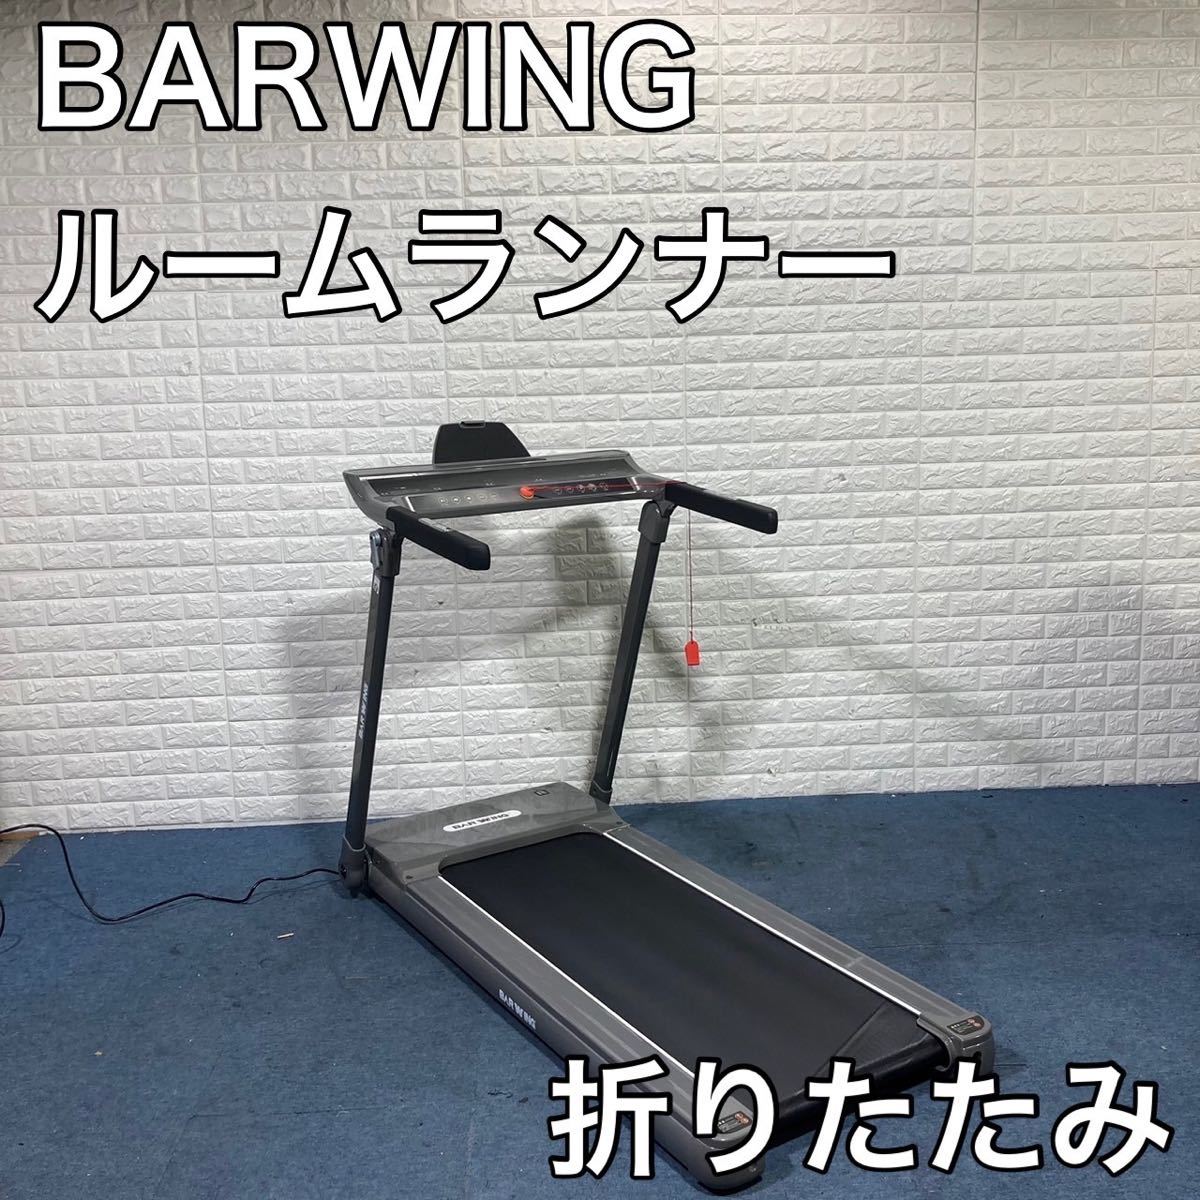 BARWING ルームランナー BW-CLOUD1 ランニングマシン C101 ...